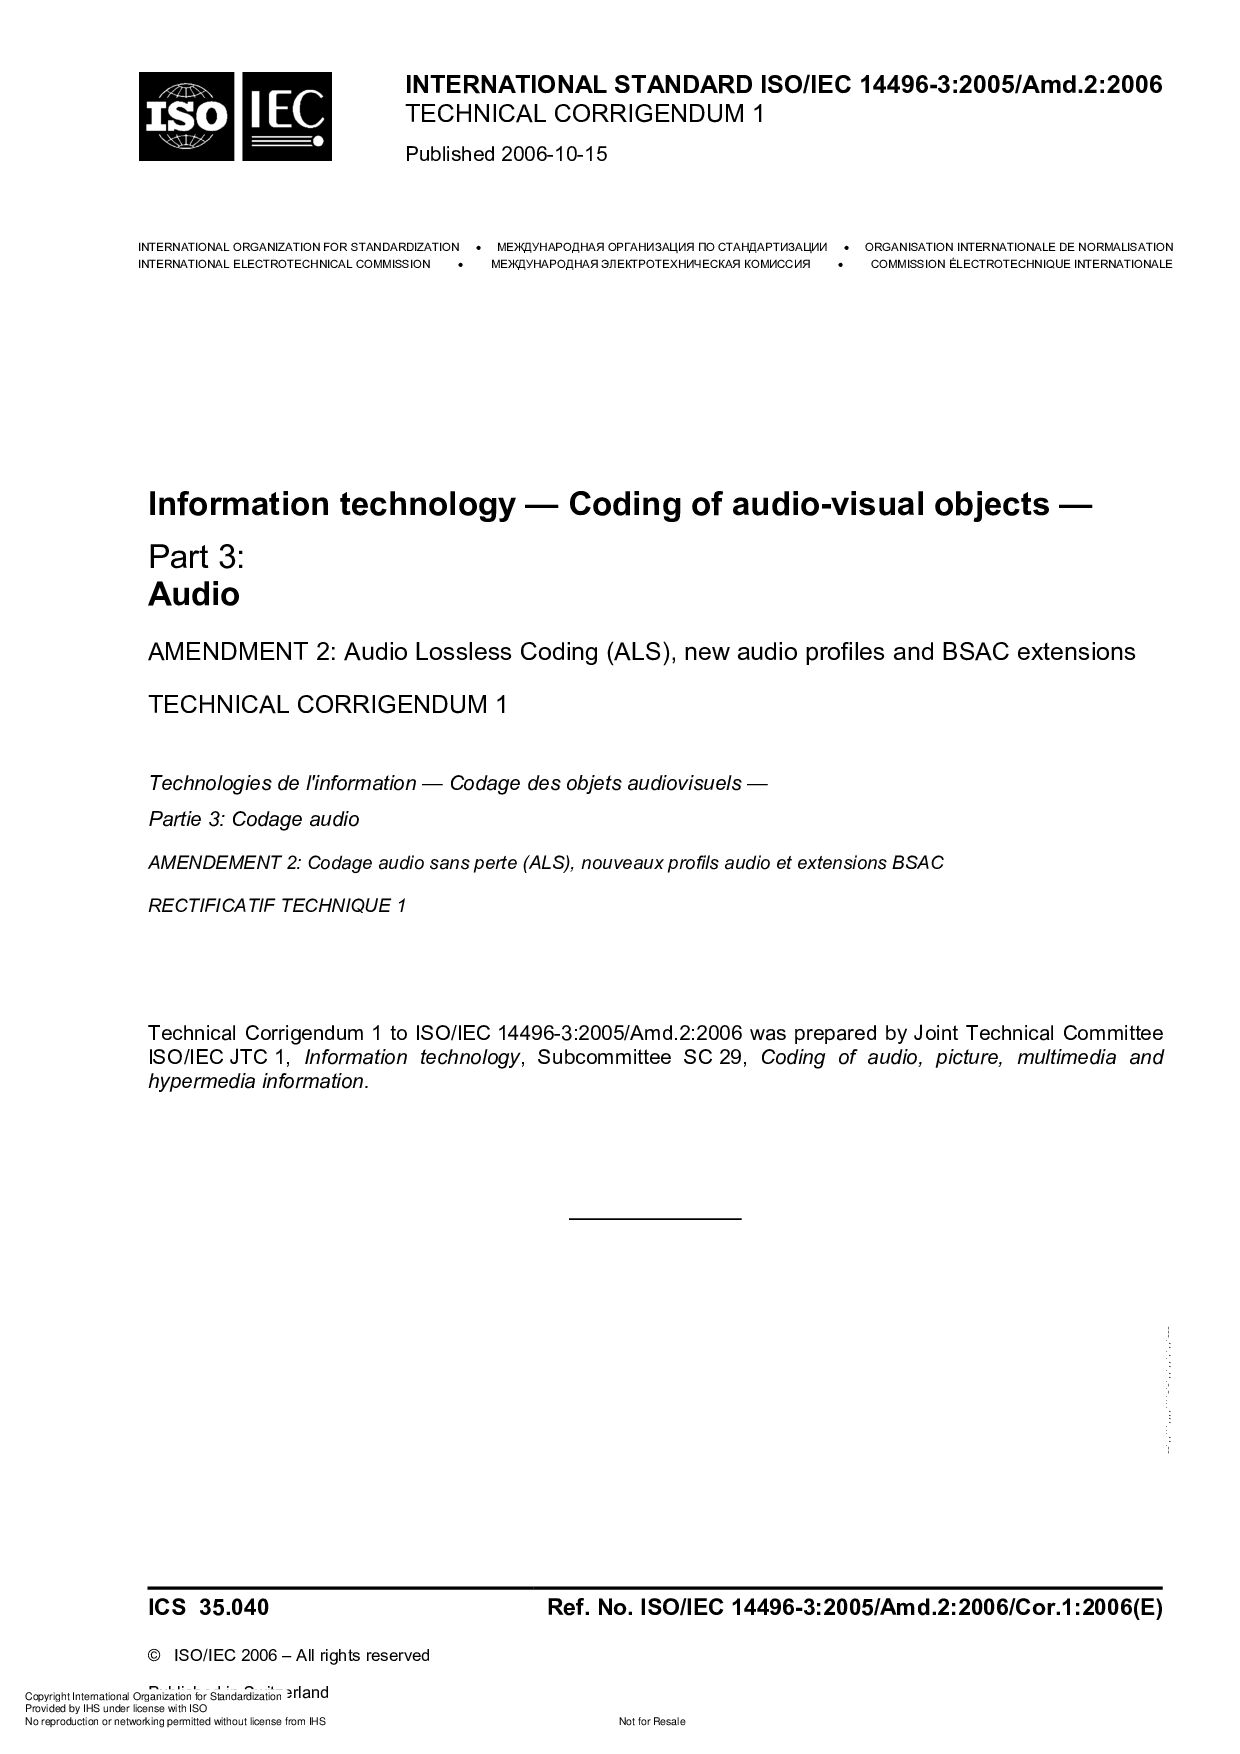 ISO/IEC 14496-3:2005/Amd 2:2006/Cor 1:2006